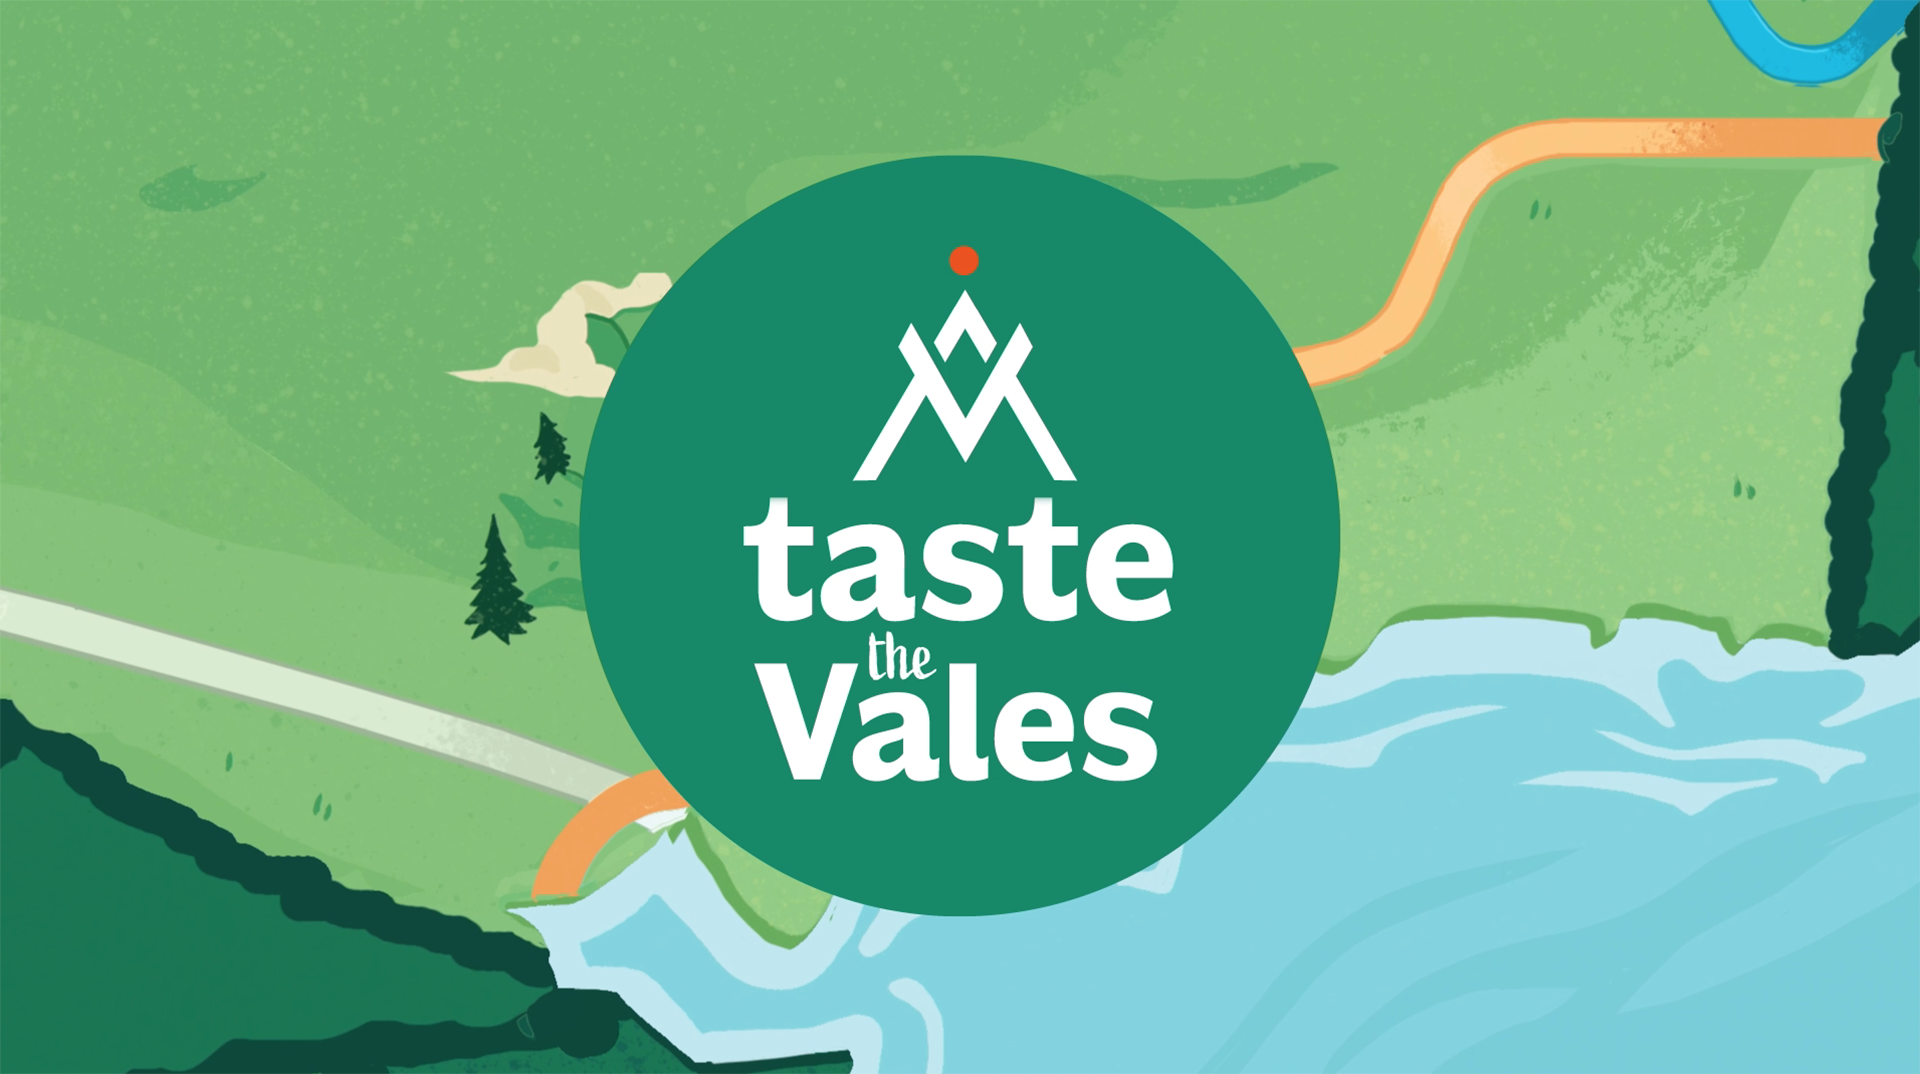 Munster Vales - Taste the Vales - One Little Studio - Motiongraphics